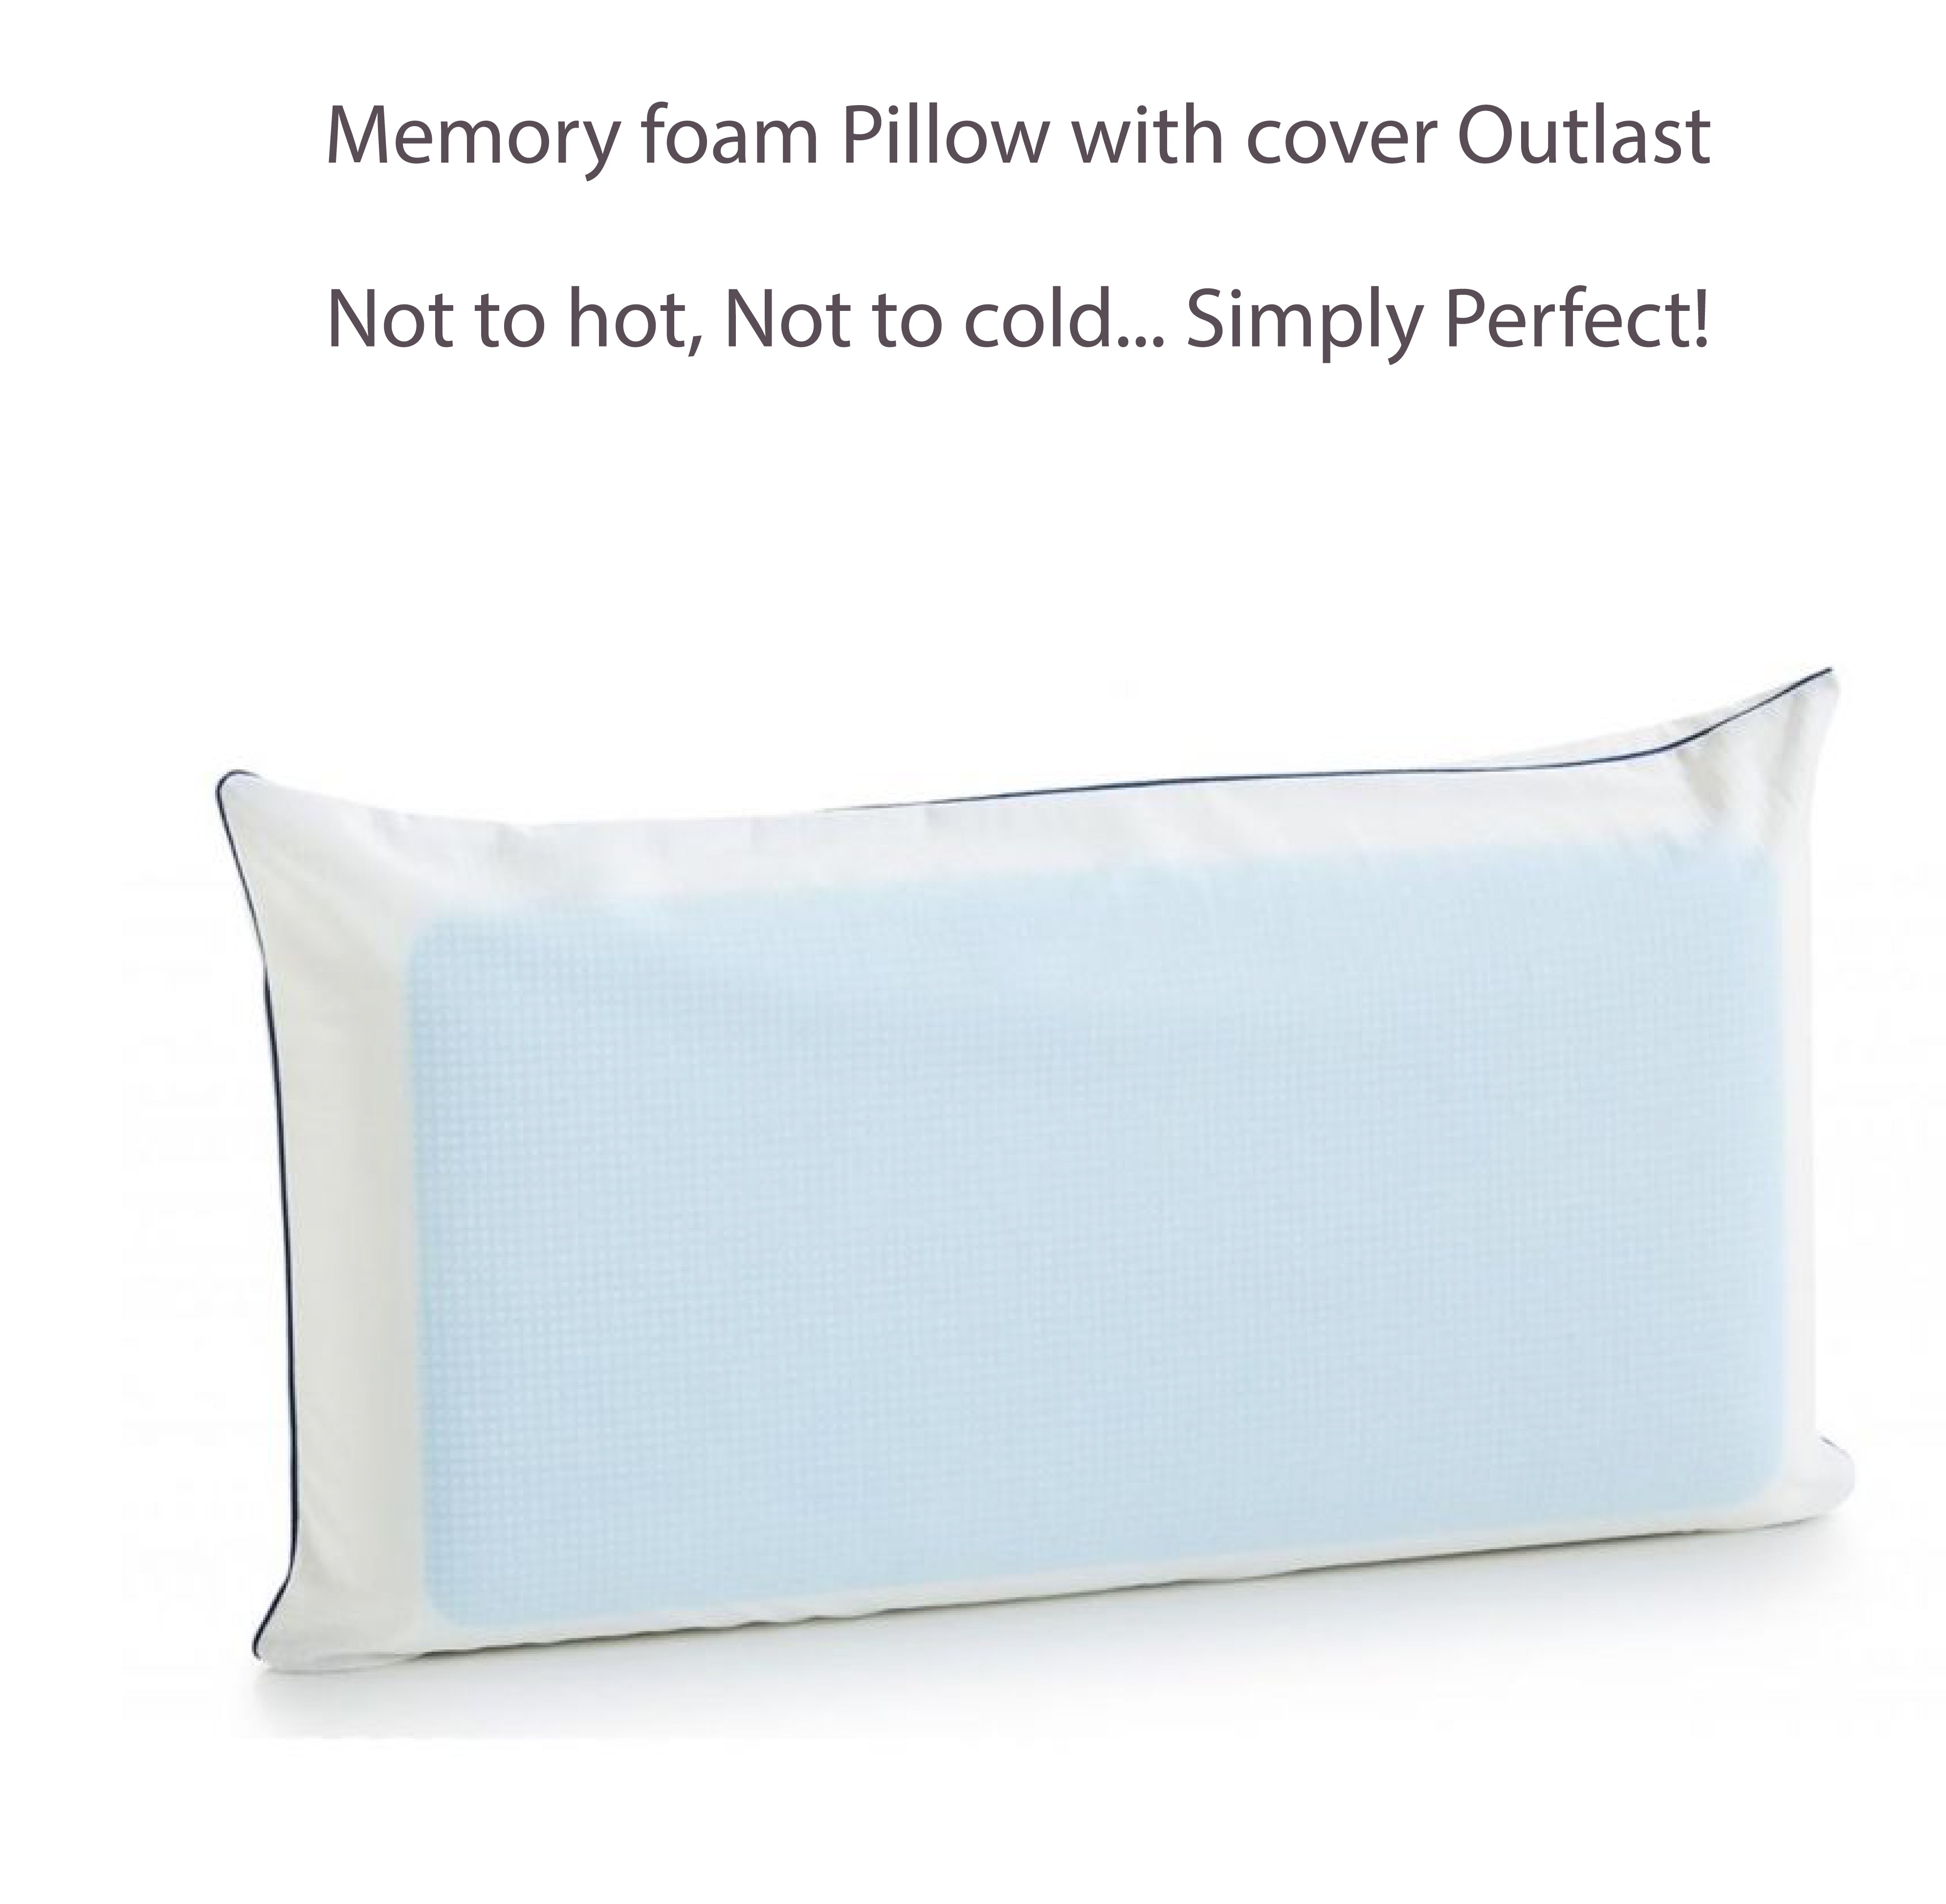 Prfect Outlast Pillow